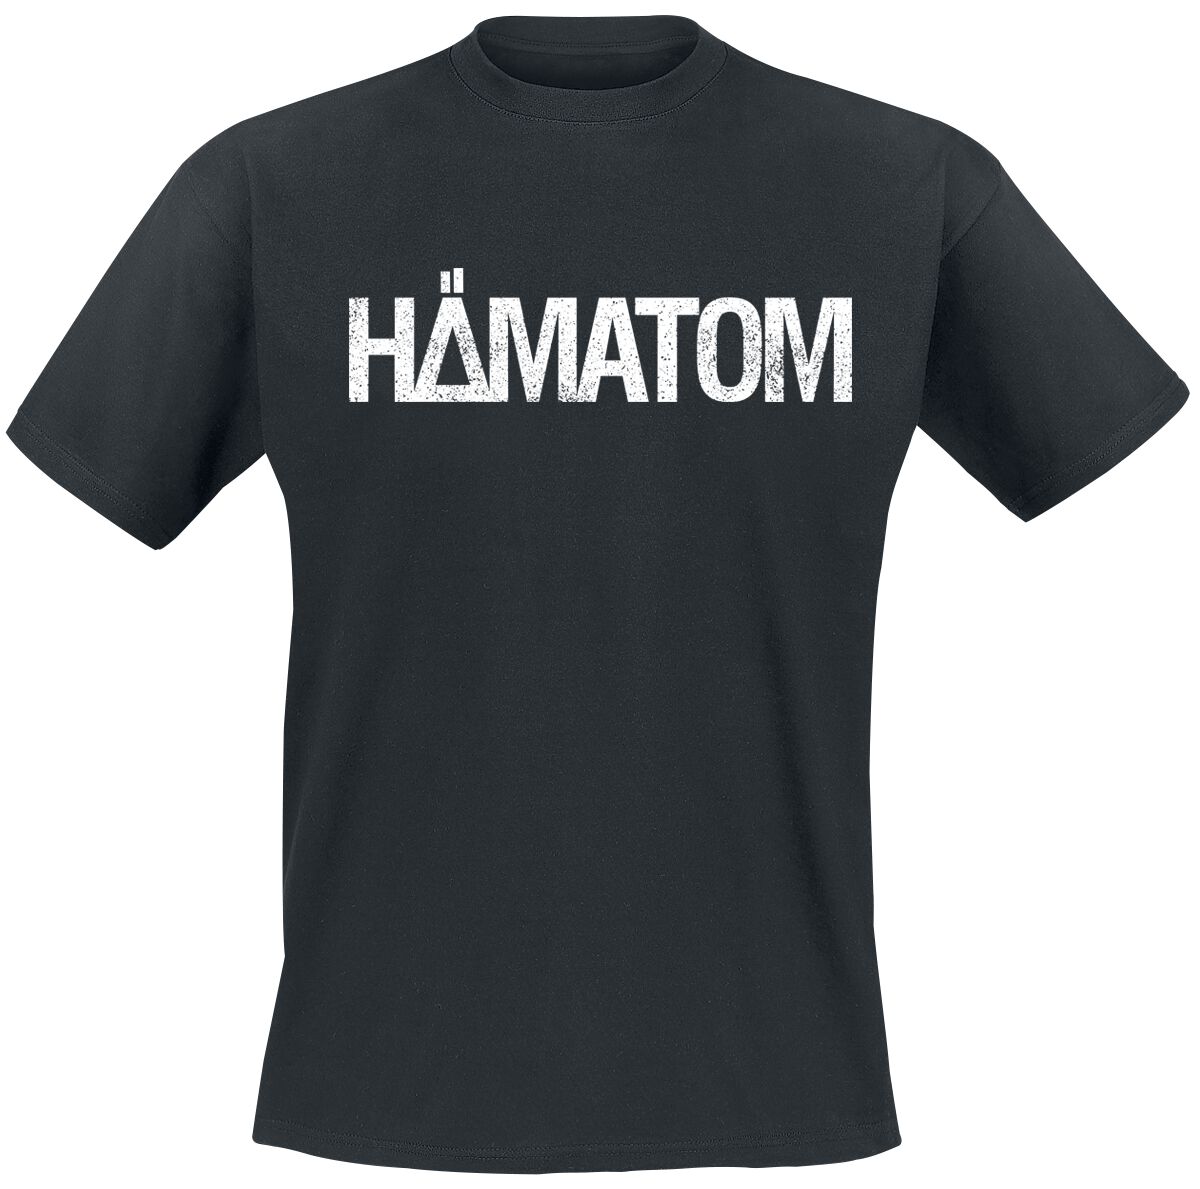 Hämatom T-Shirt - Ich hasse euch alle - S bis M - für Männer - Größe M - schwarz  - Lizenziertes Merchandise!